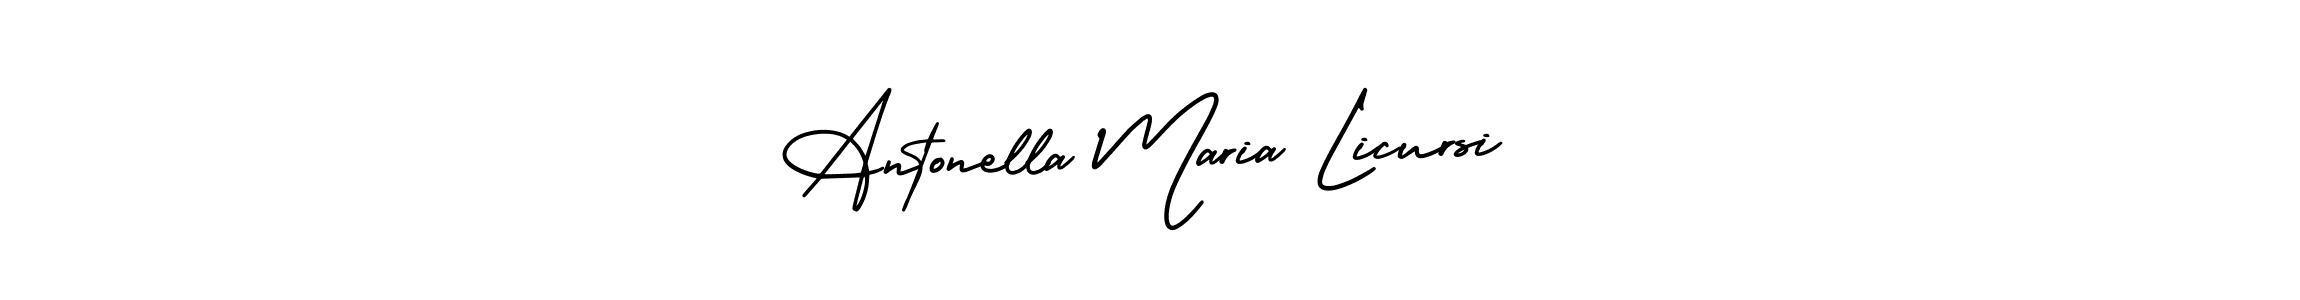 Best and Professional Signature Style for Antonella Maria Licursi. AmerikaSignatureDemo-Regular Best Signature Style Collection. Antonella Maria Licursi signature style 3 images and pictures png